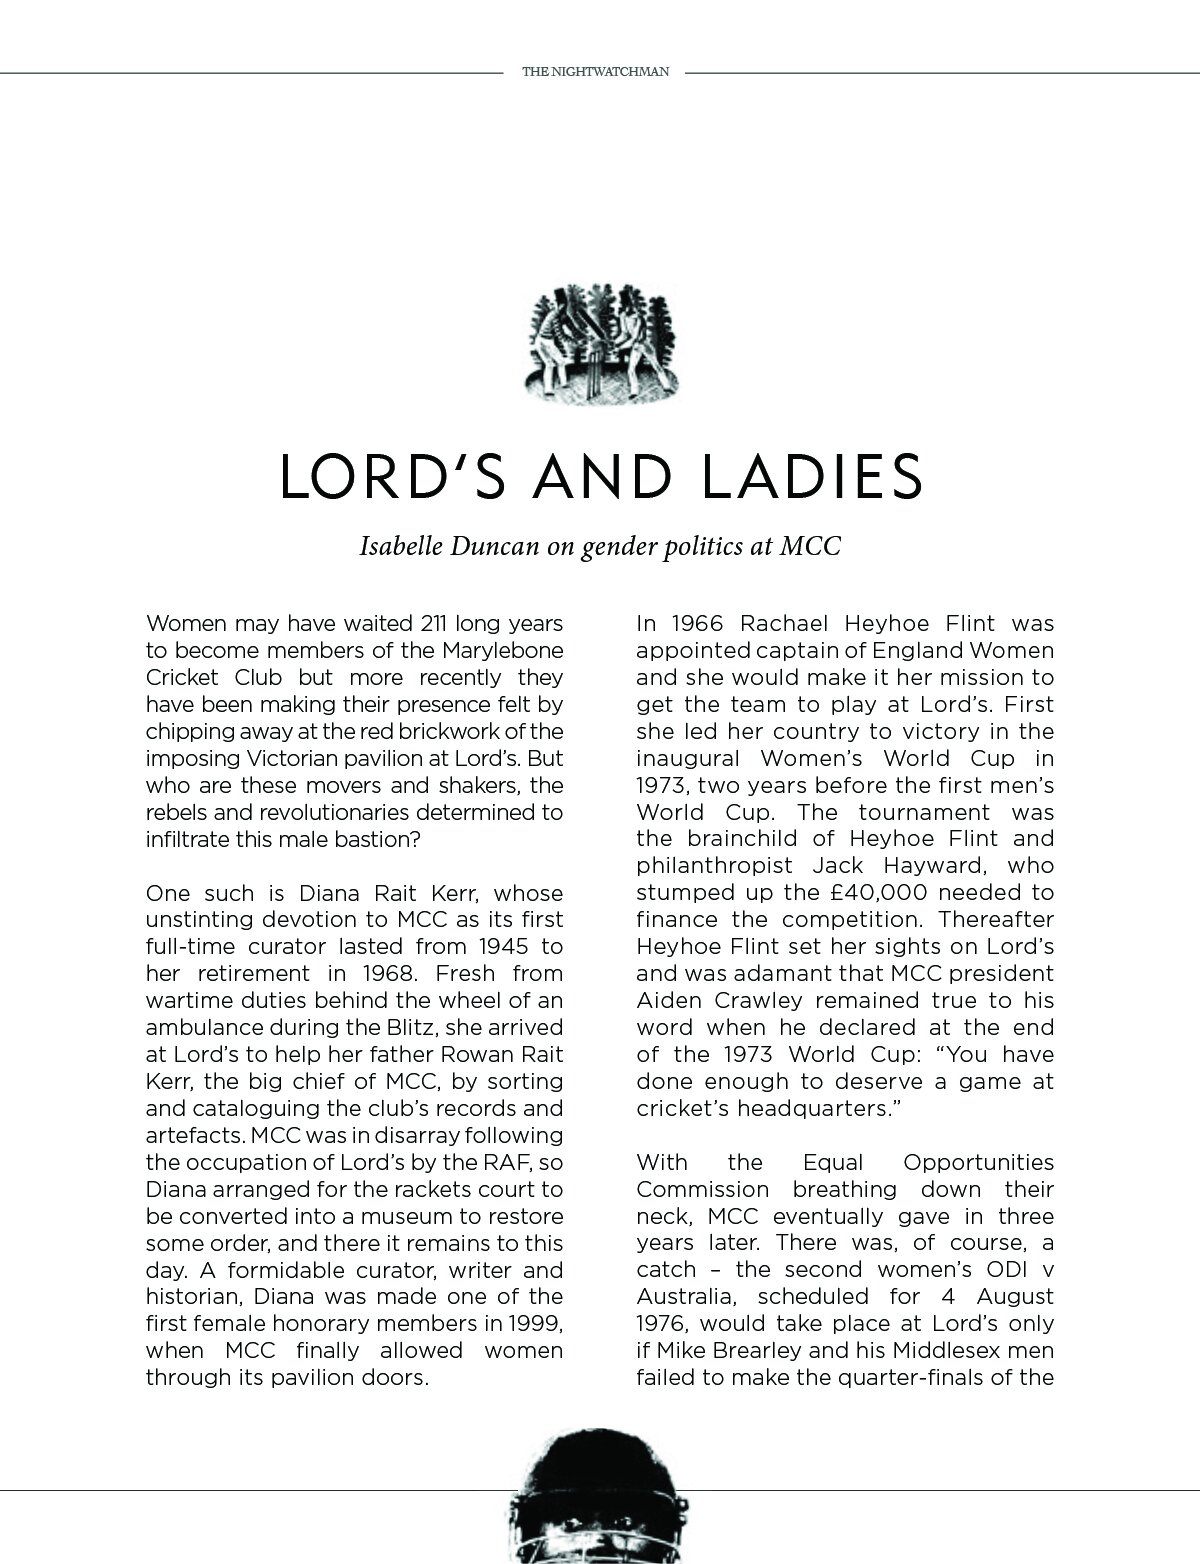 Lords-and-ladies2.jpg